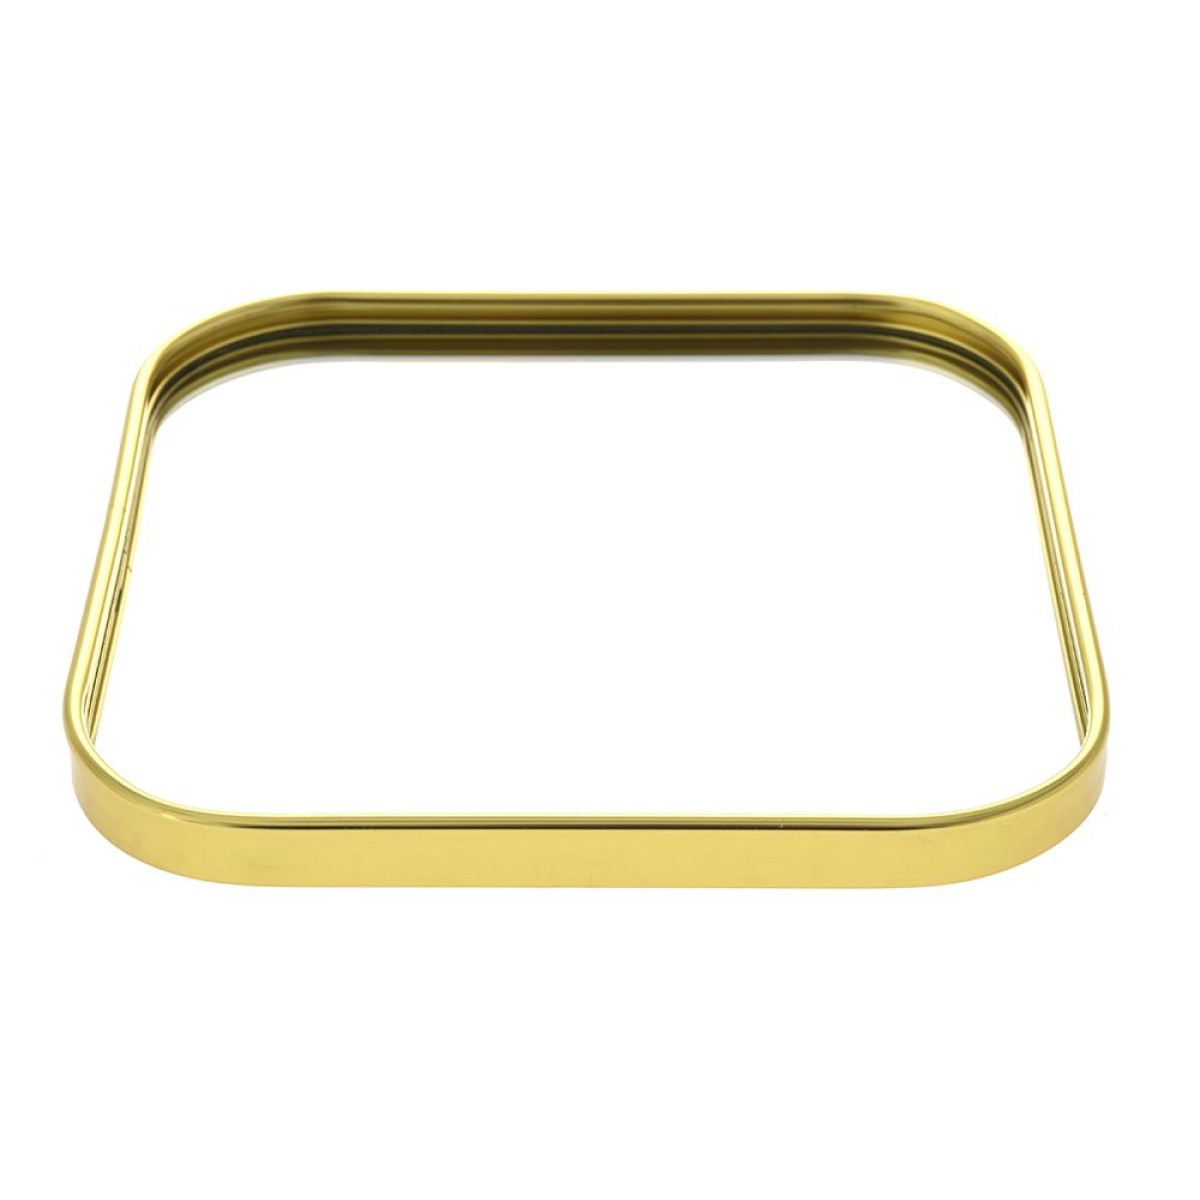 Δίσκος με Καθρέφτη 20x20cm Τετράγωνος & Μεταλλικός σε χρυσό χρώμα Iliadis 80973